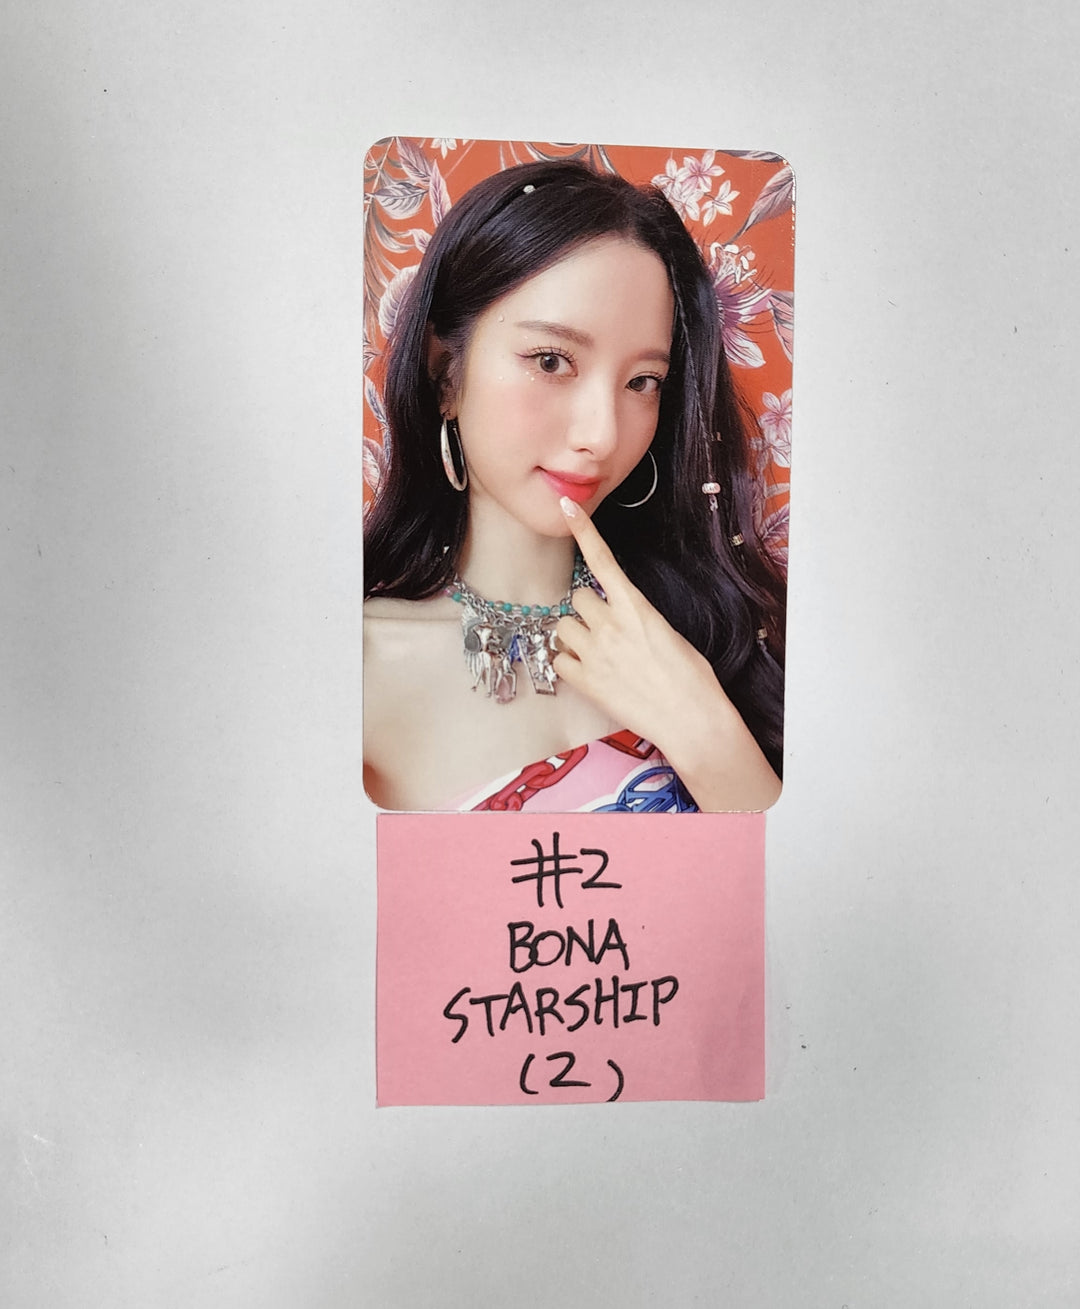 우주소녀 "Sequence" - 스타쉽 예약판매 혜택 포토카드